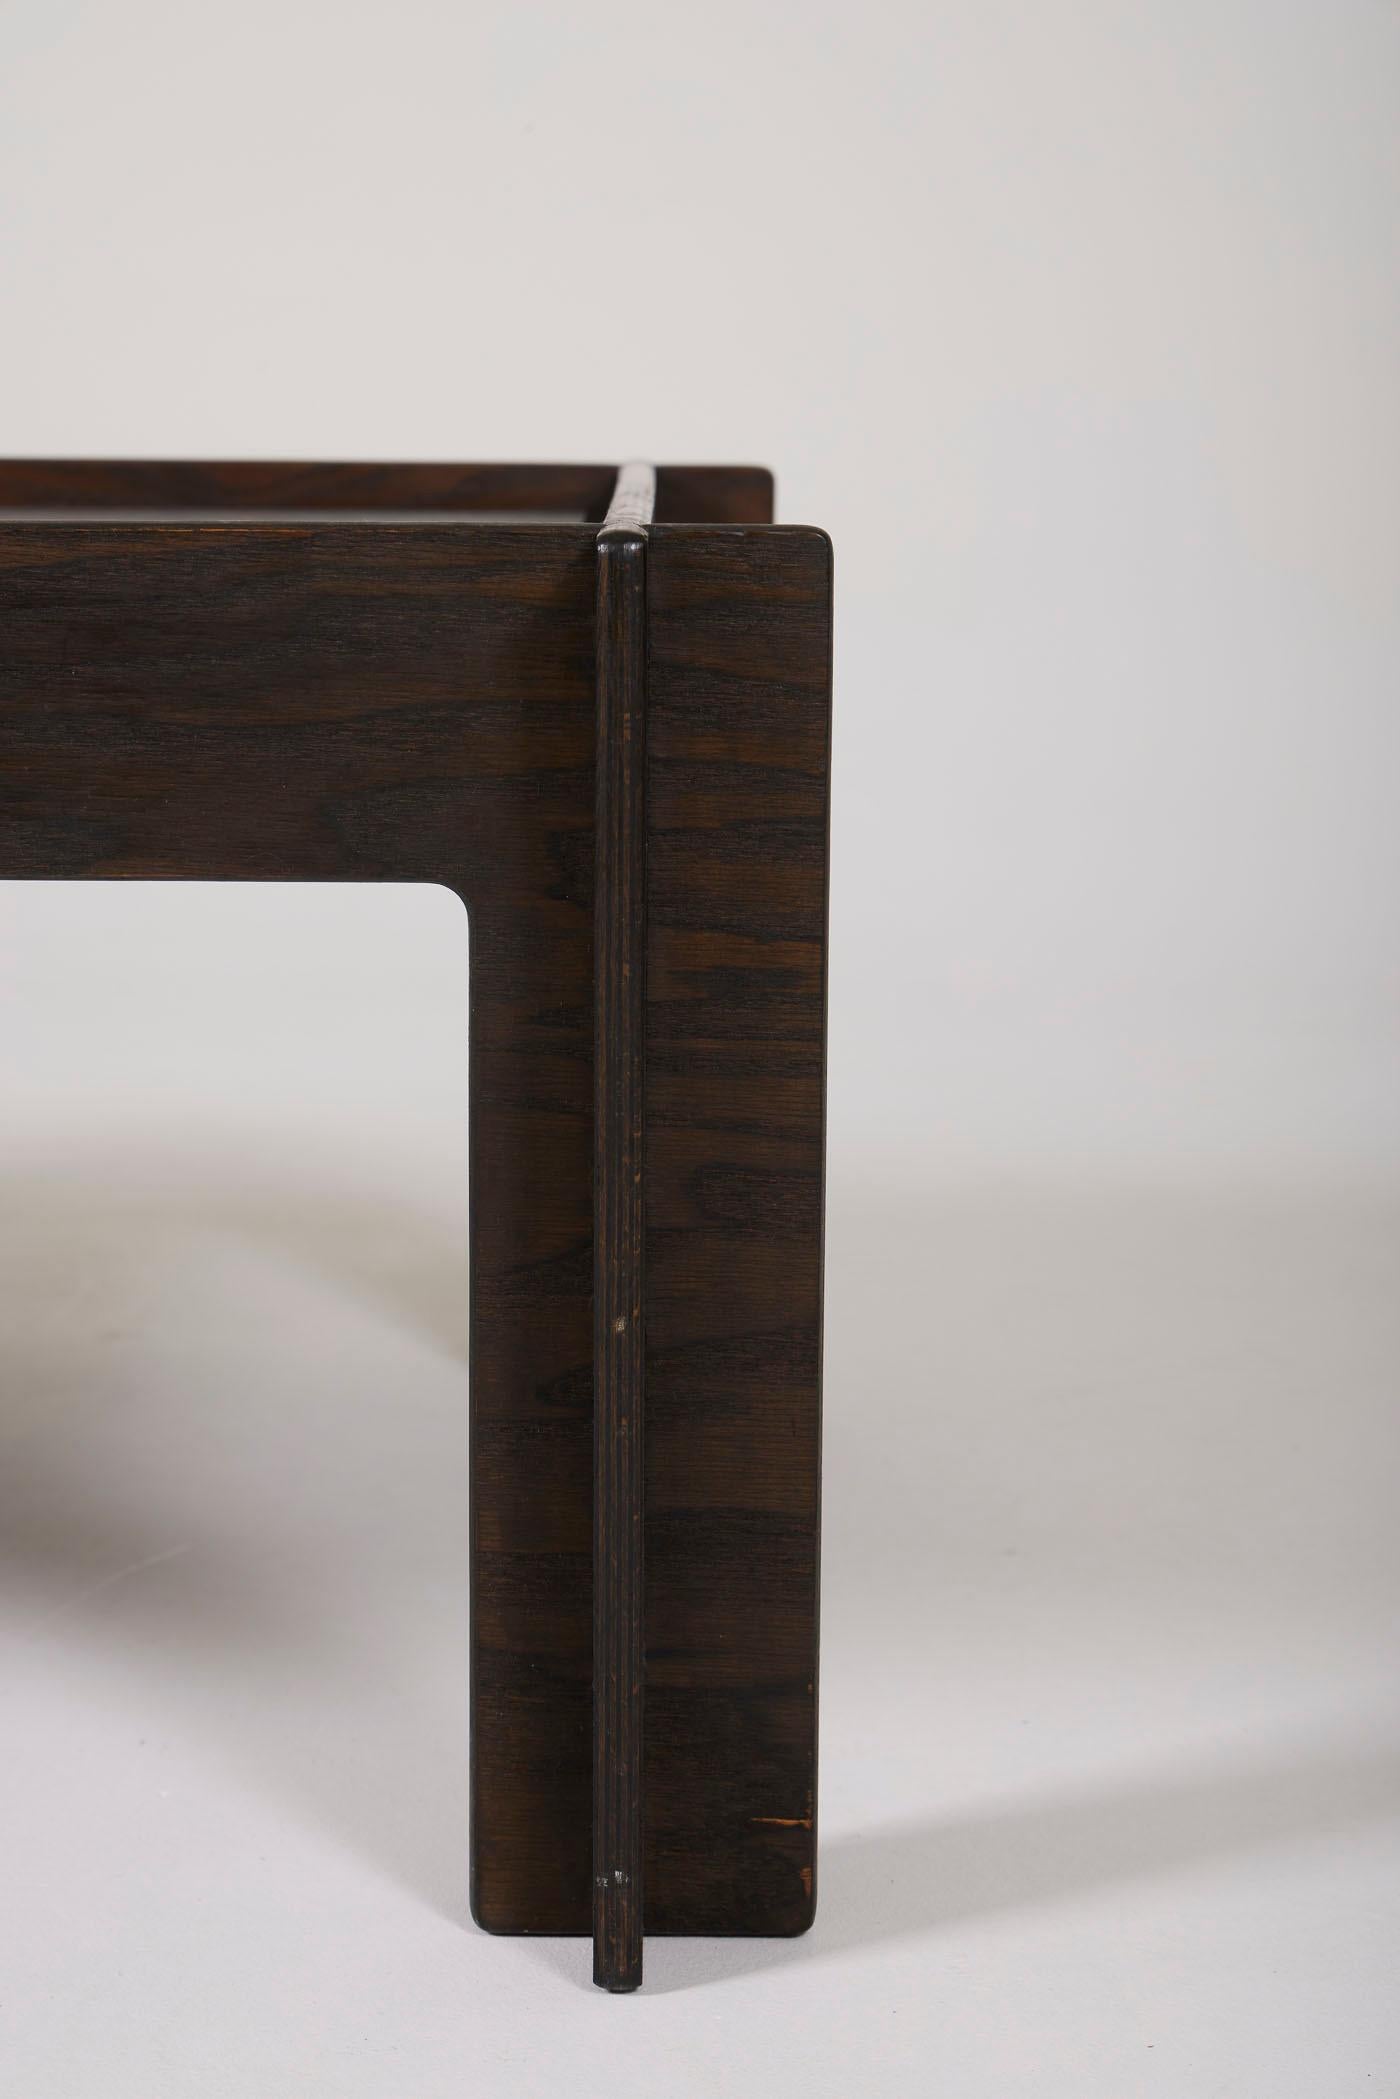 Arne Jacobsen coffee table 2